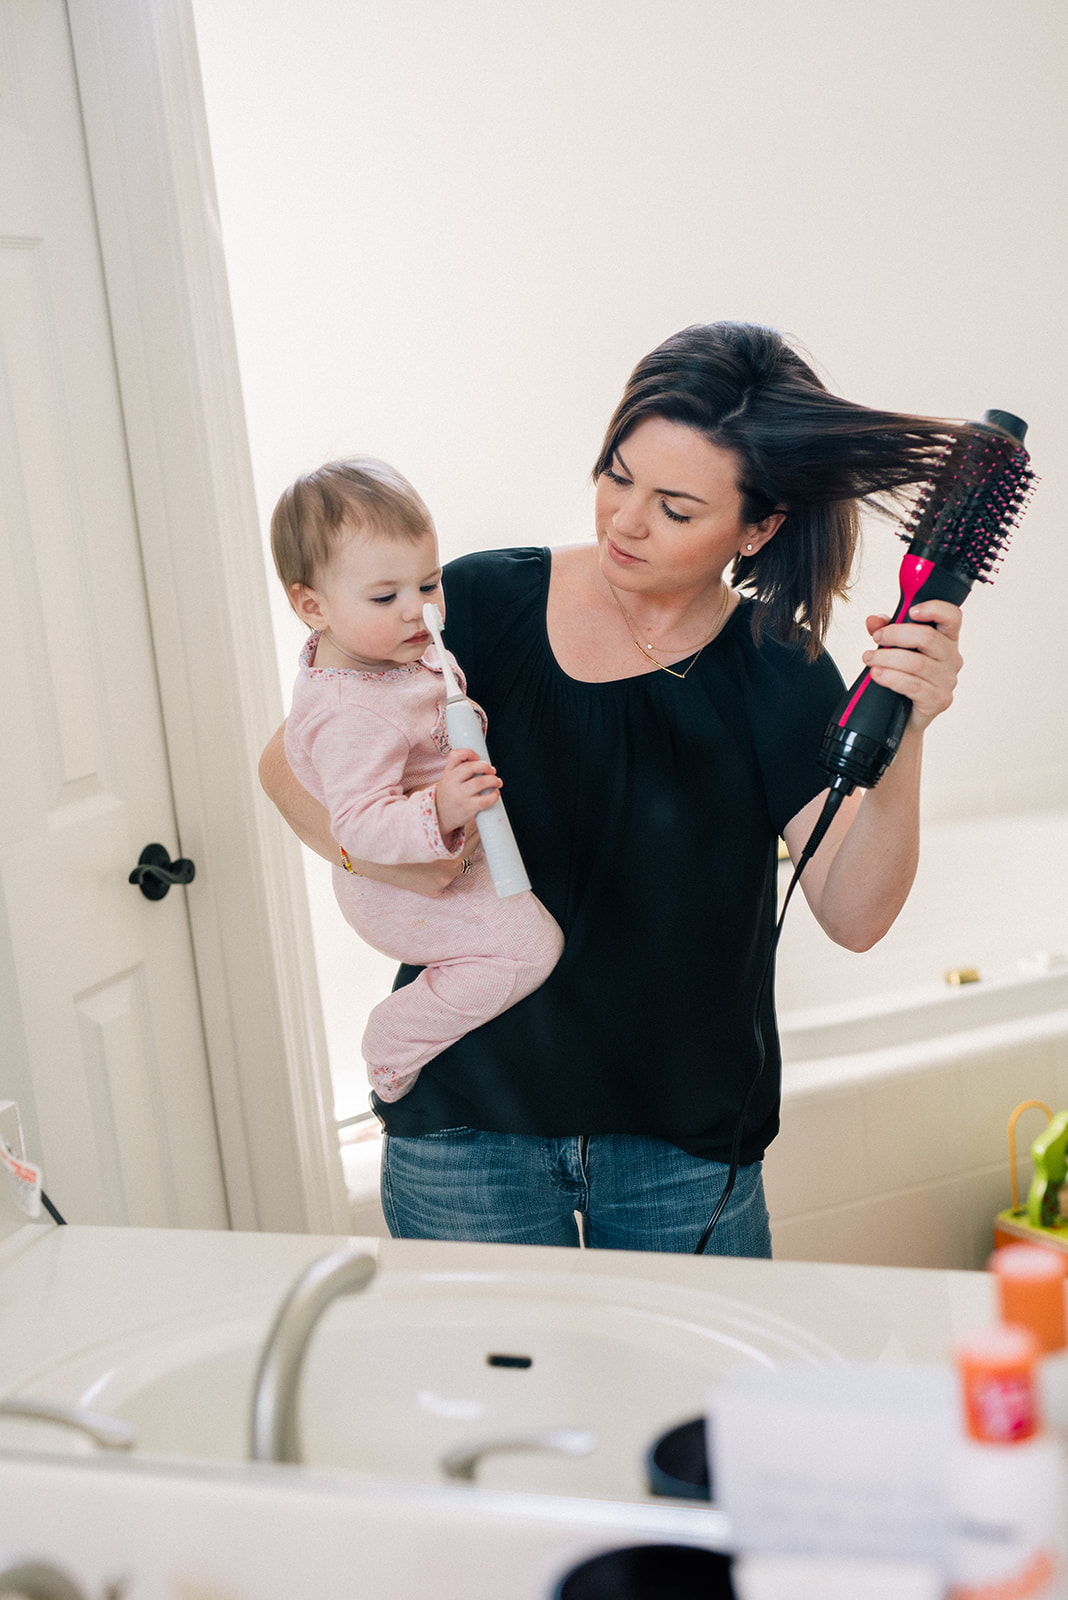 The Best Hair Dryer For Your Money | Revlon Dryer Brush